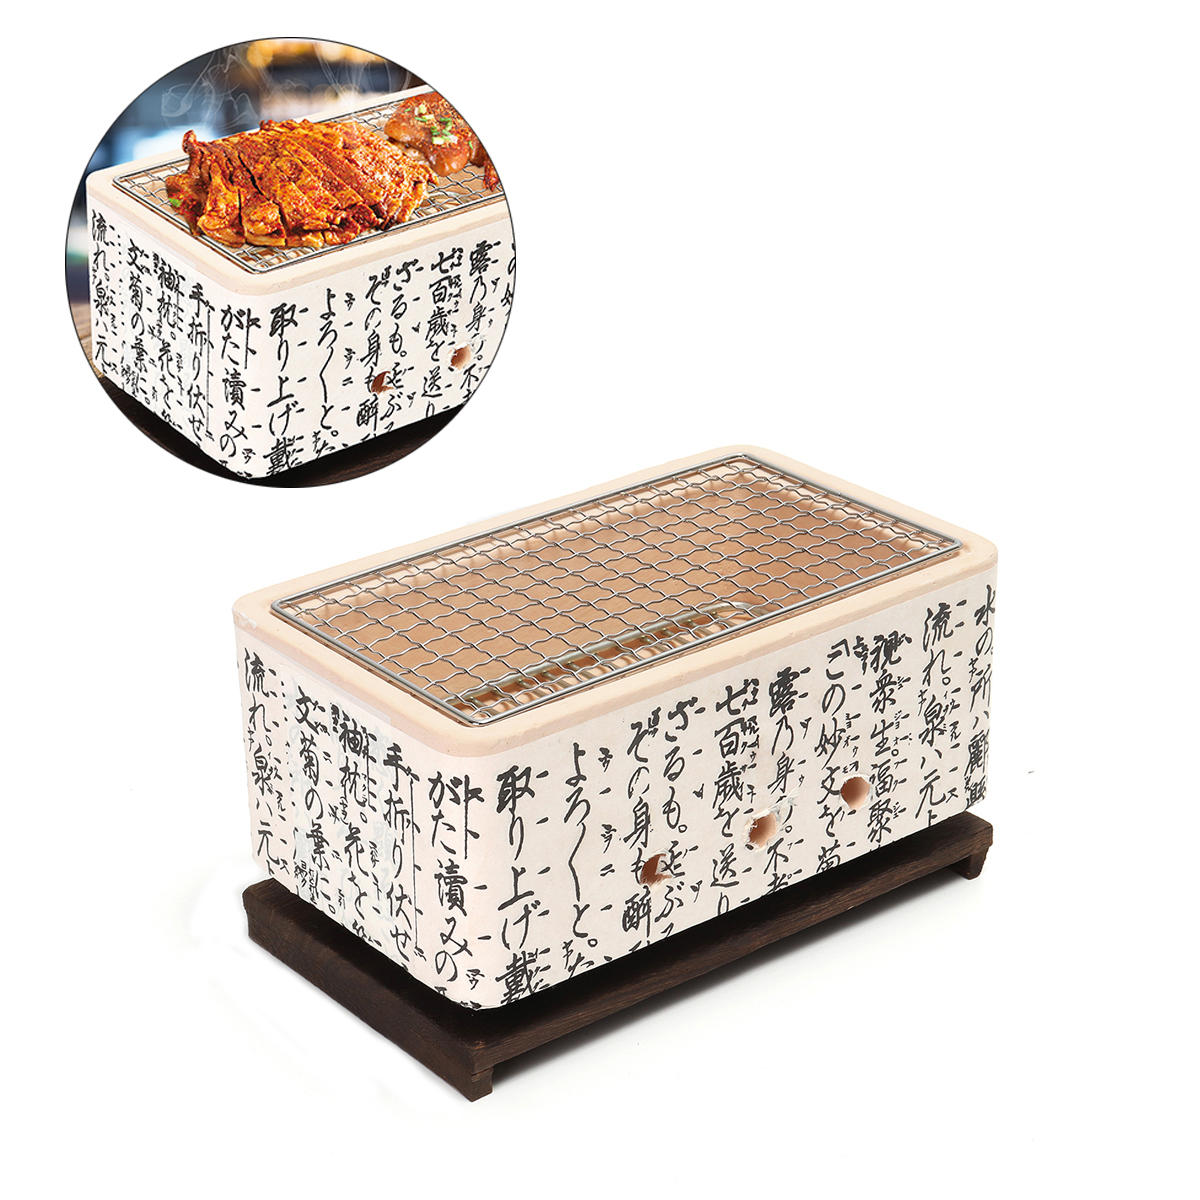 4 In 1 Japanse Koreaanse keramische Hibachi BBQ-tafel Grill Yakitori Barbecue houtskool kookplaat